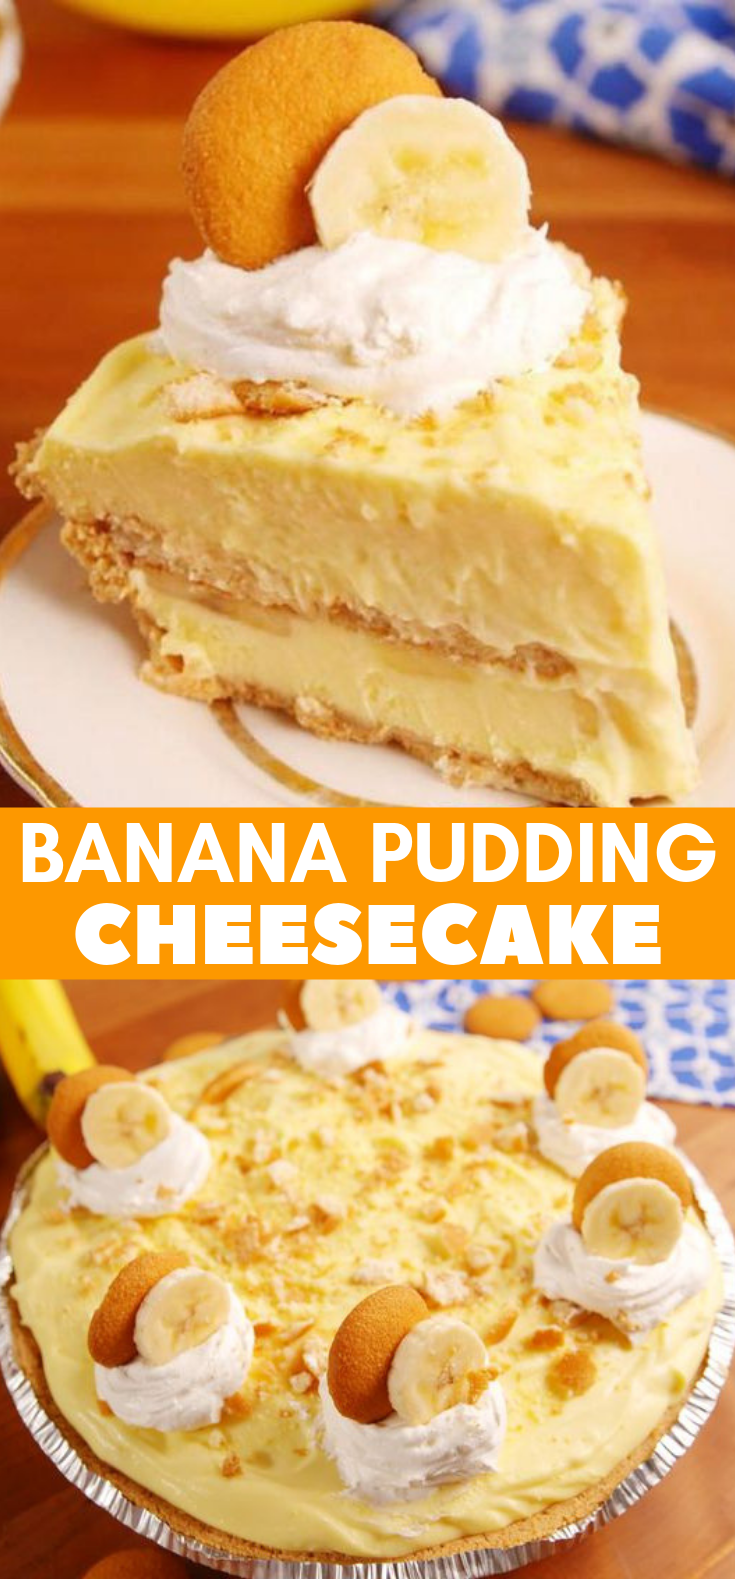 Banana Pudding Cheesecake #Dessert #Cake